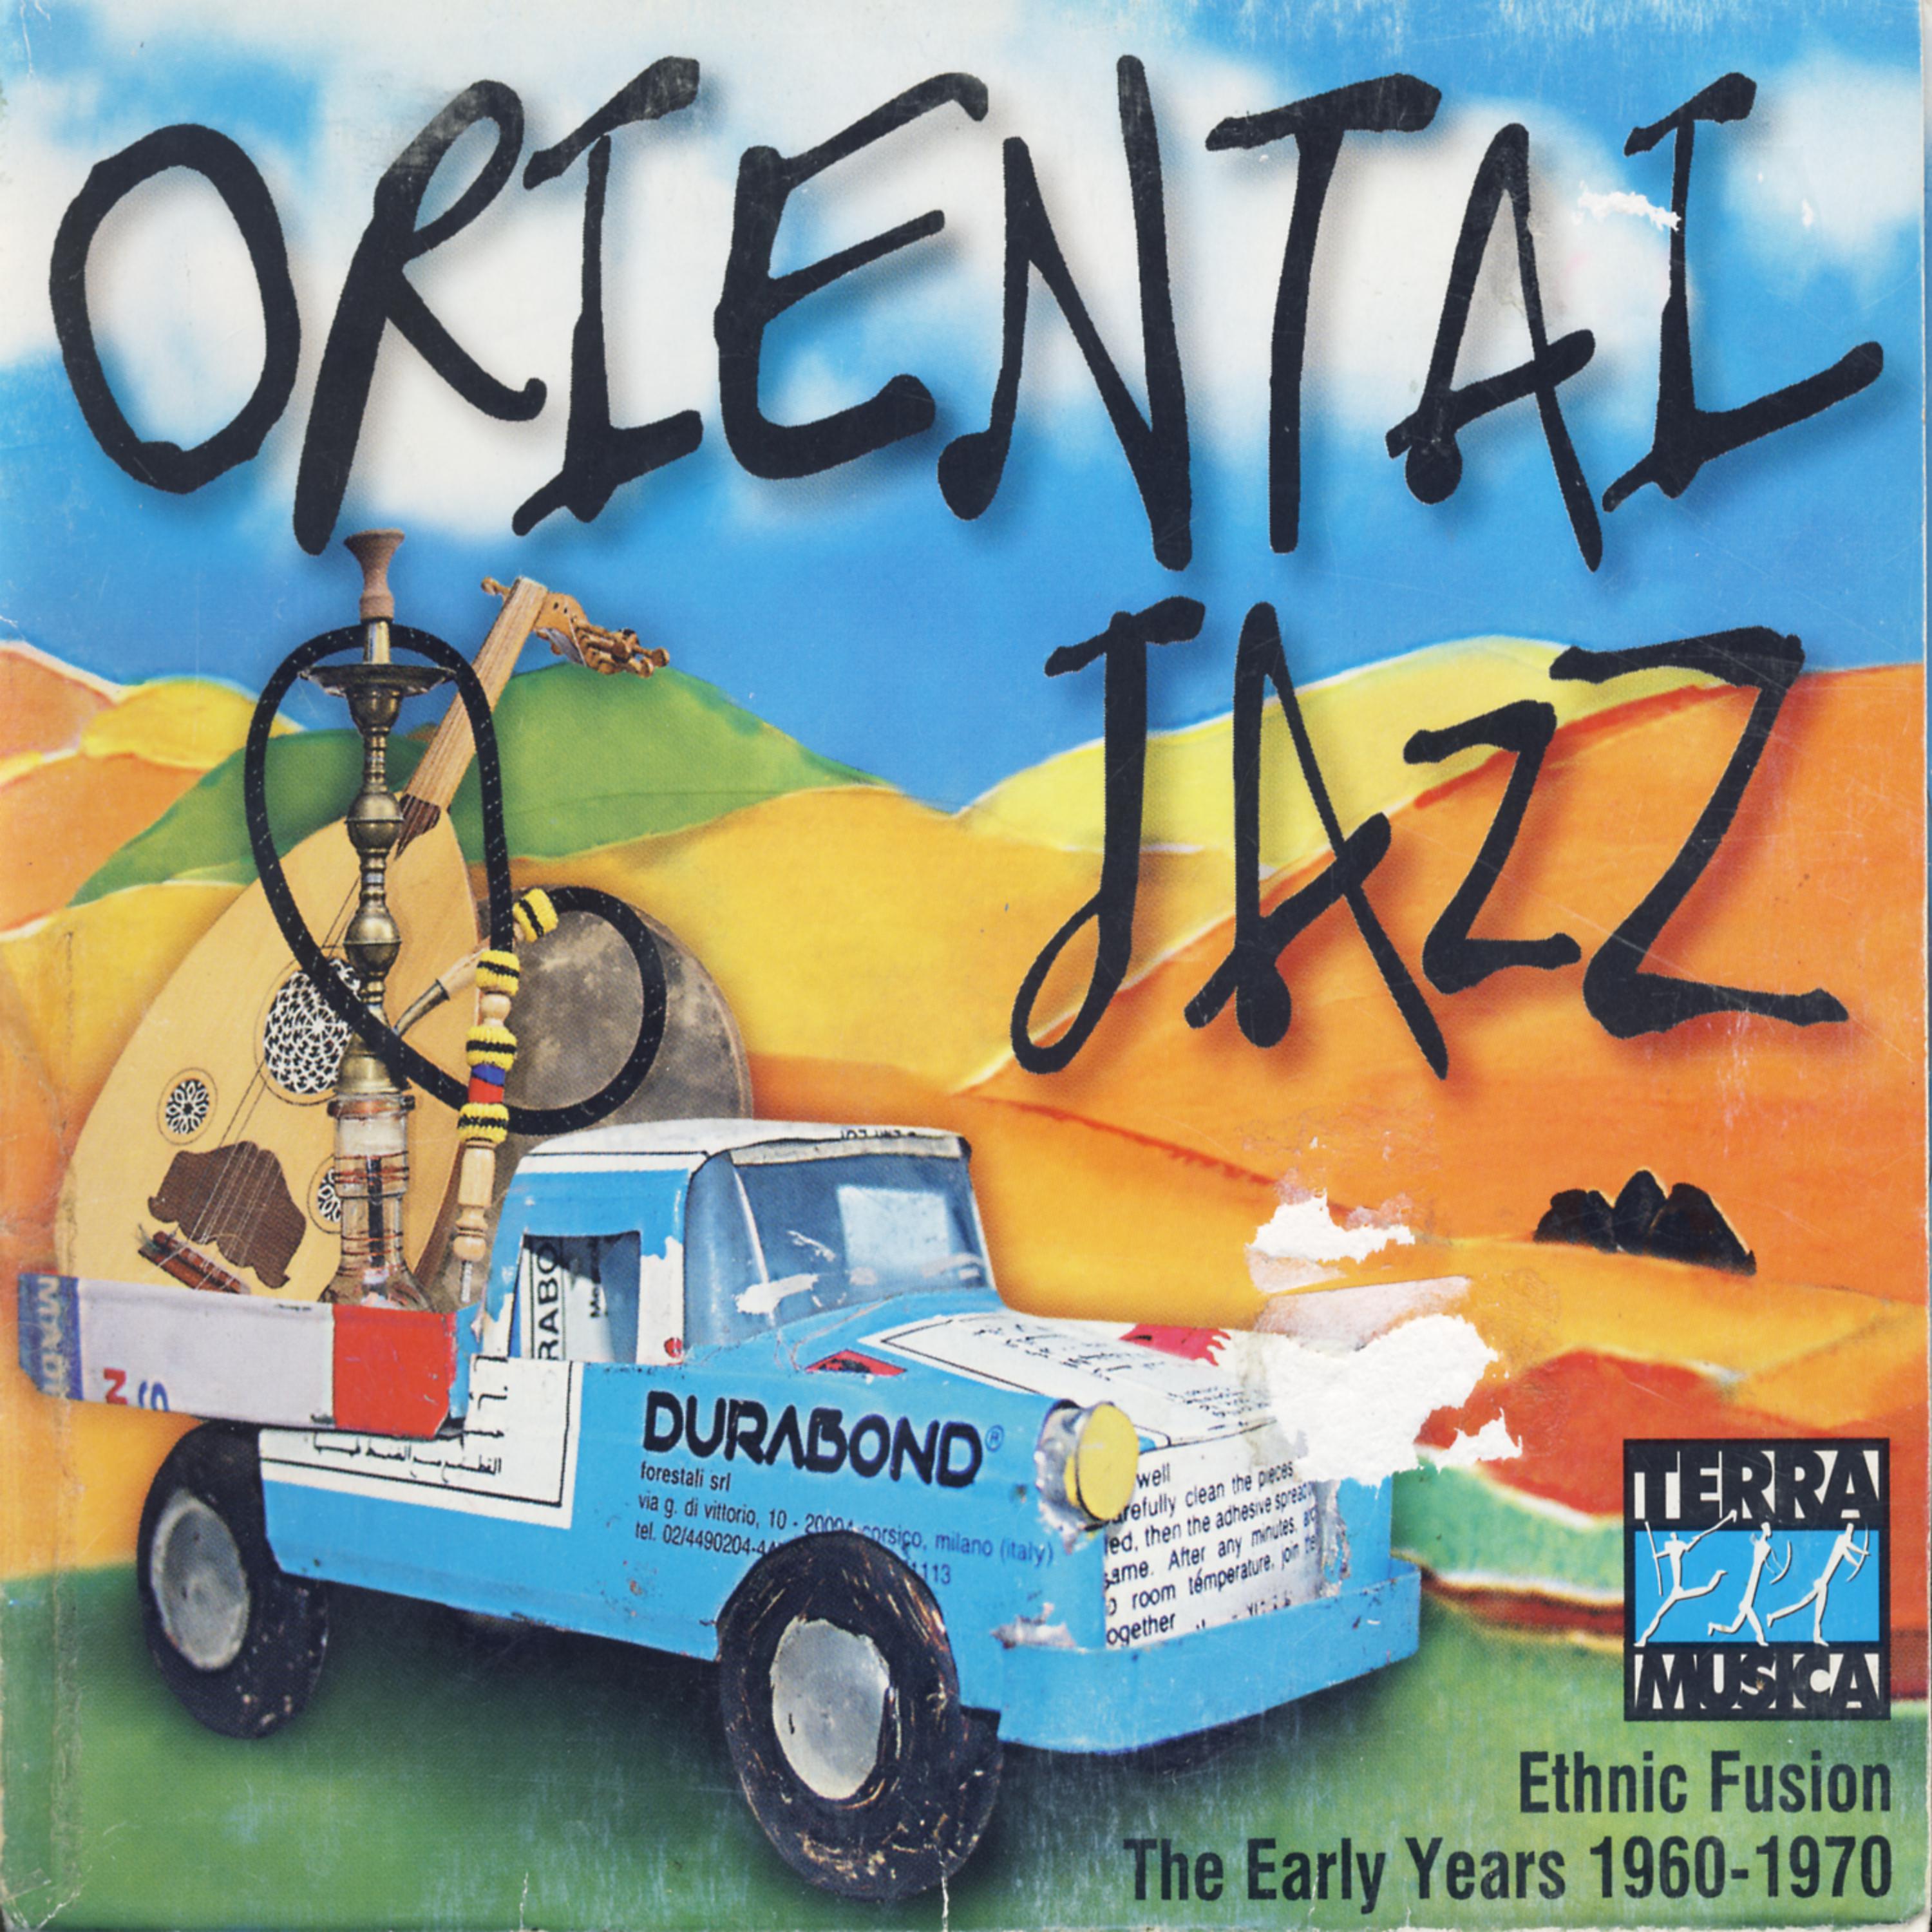 Постер альбома Oriental Jazz